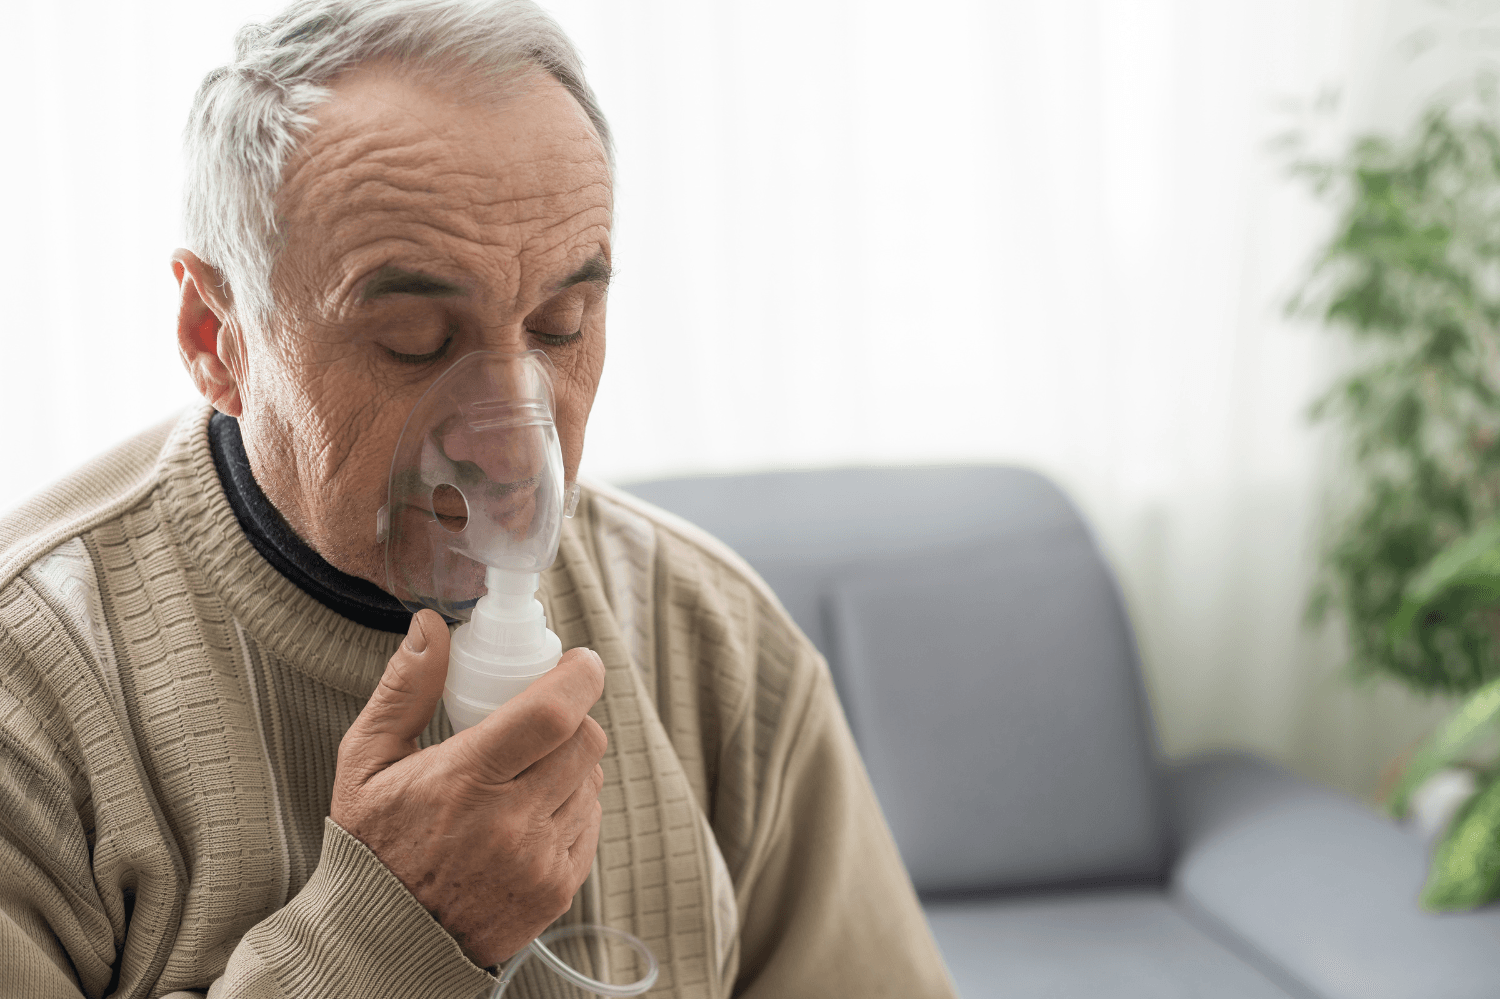 Man using inhaler to breath